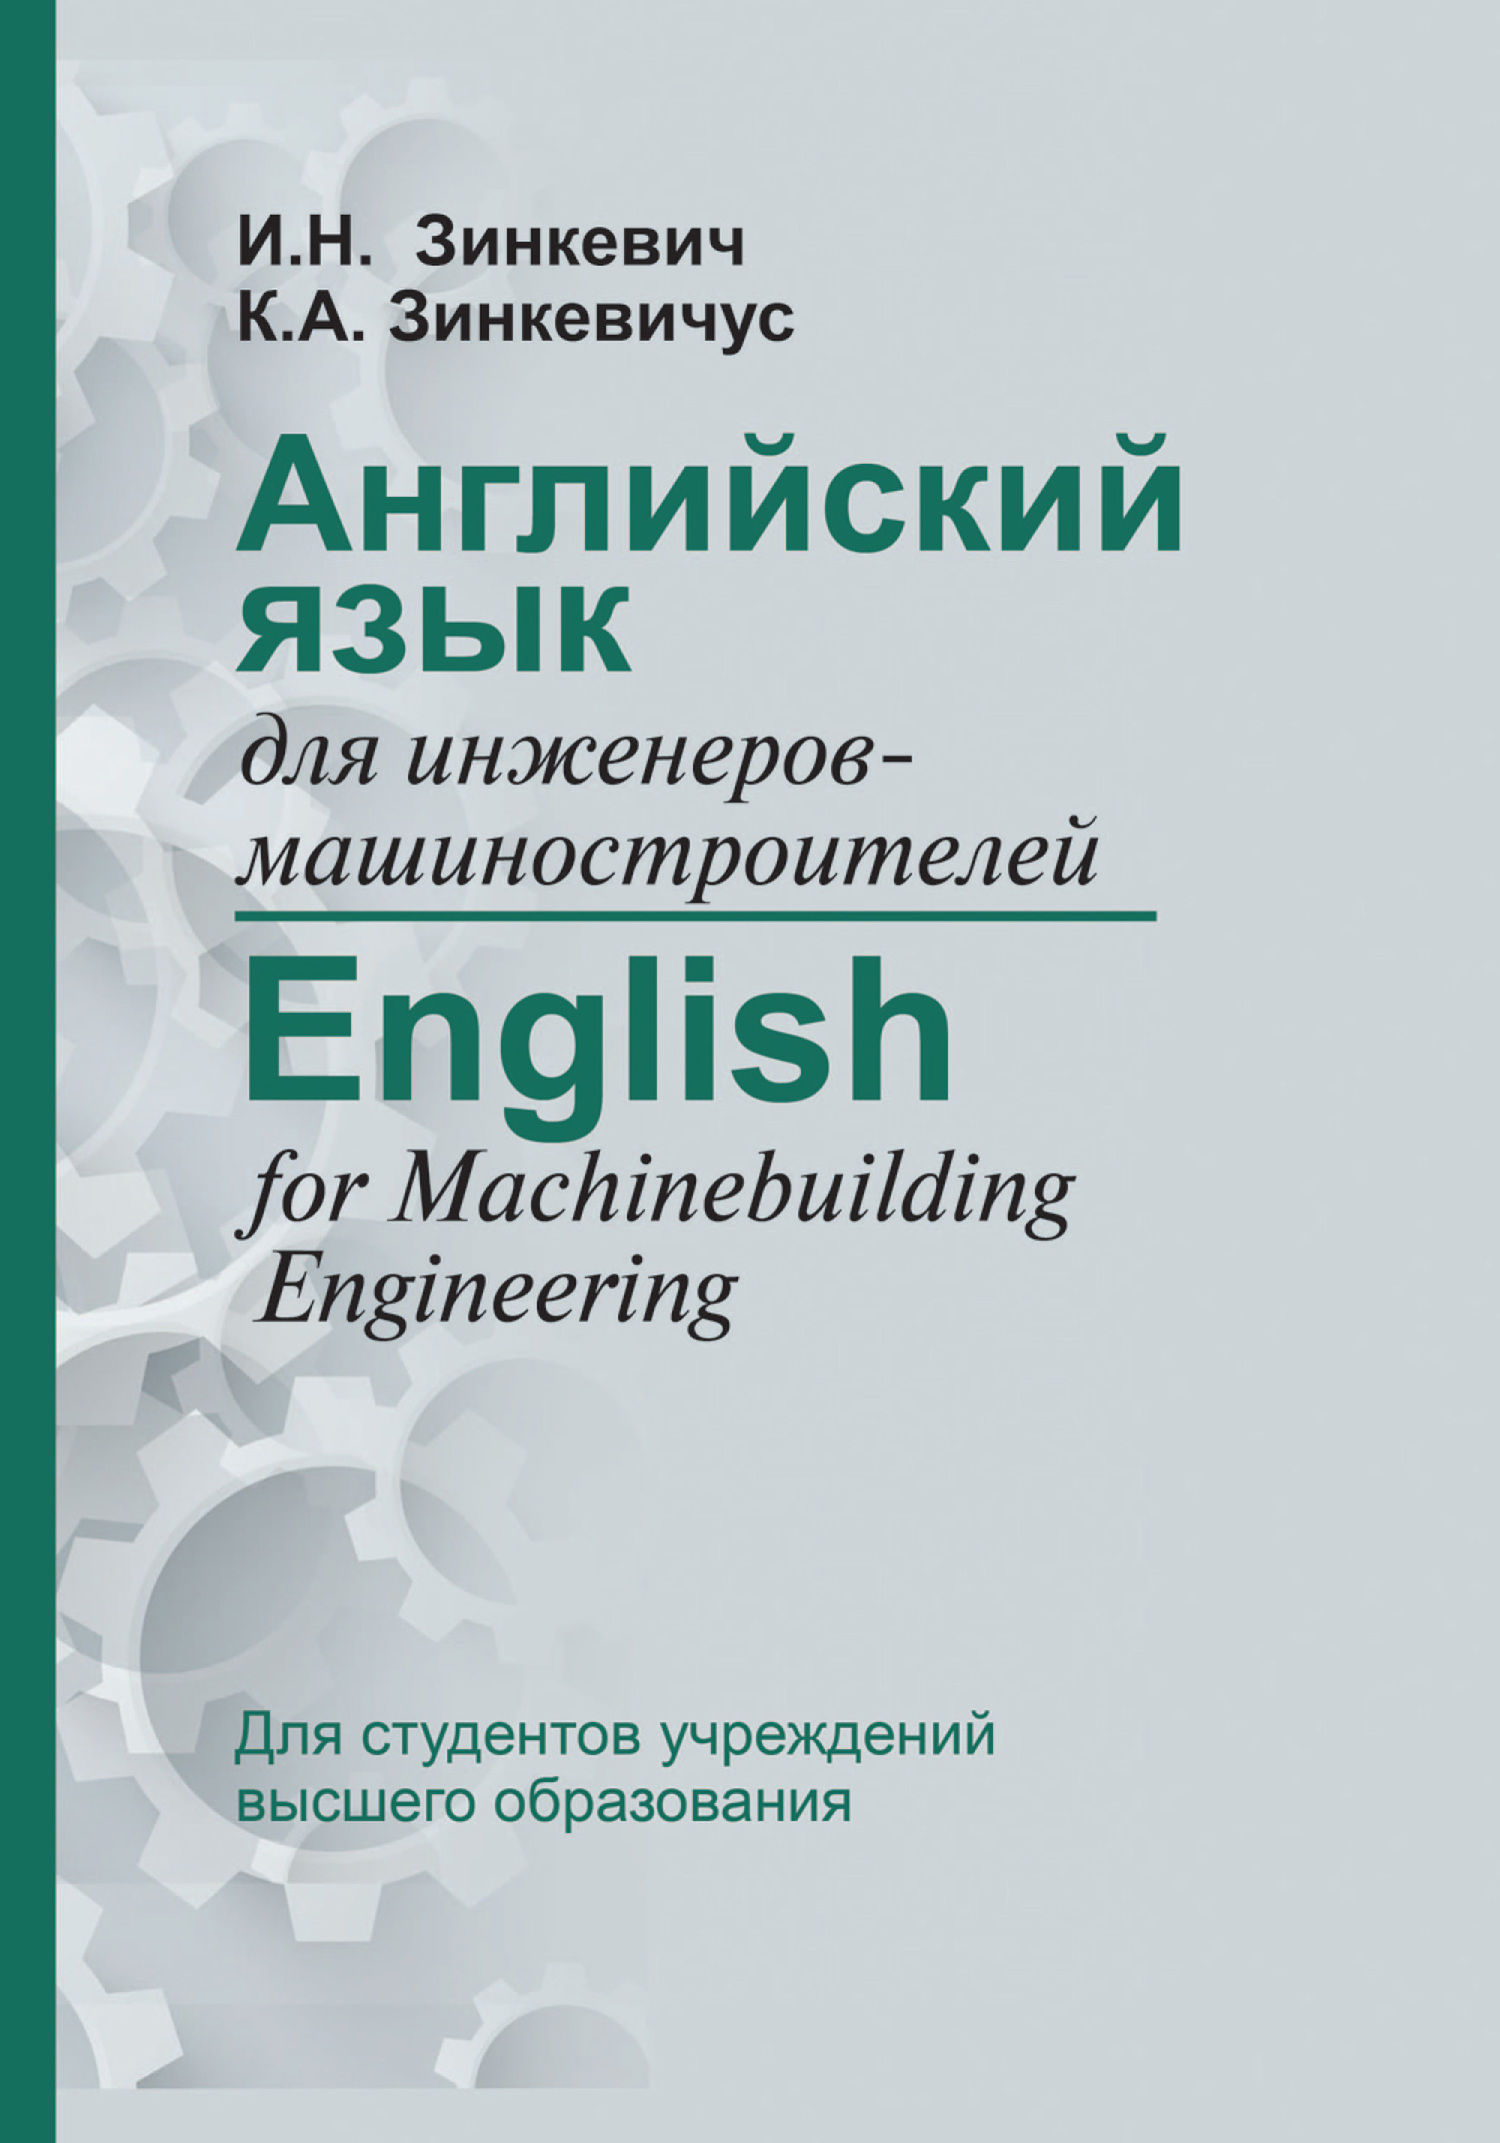 Английский язык для инженеров-машиностроителей / English for Machinebuilding Engineering